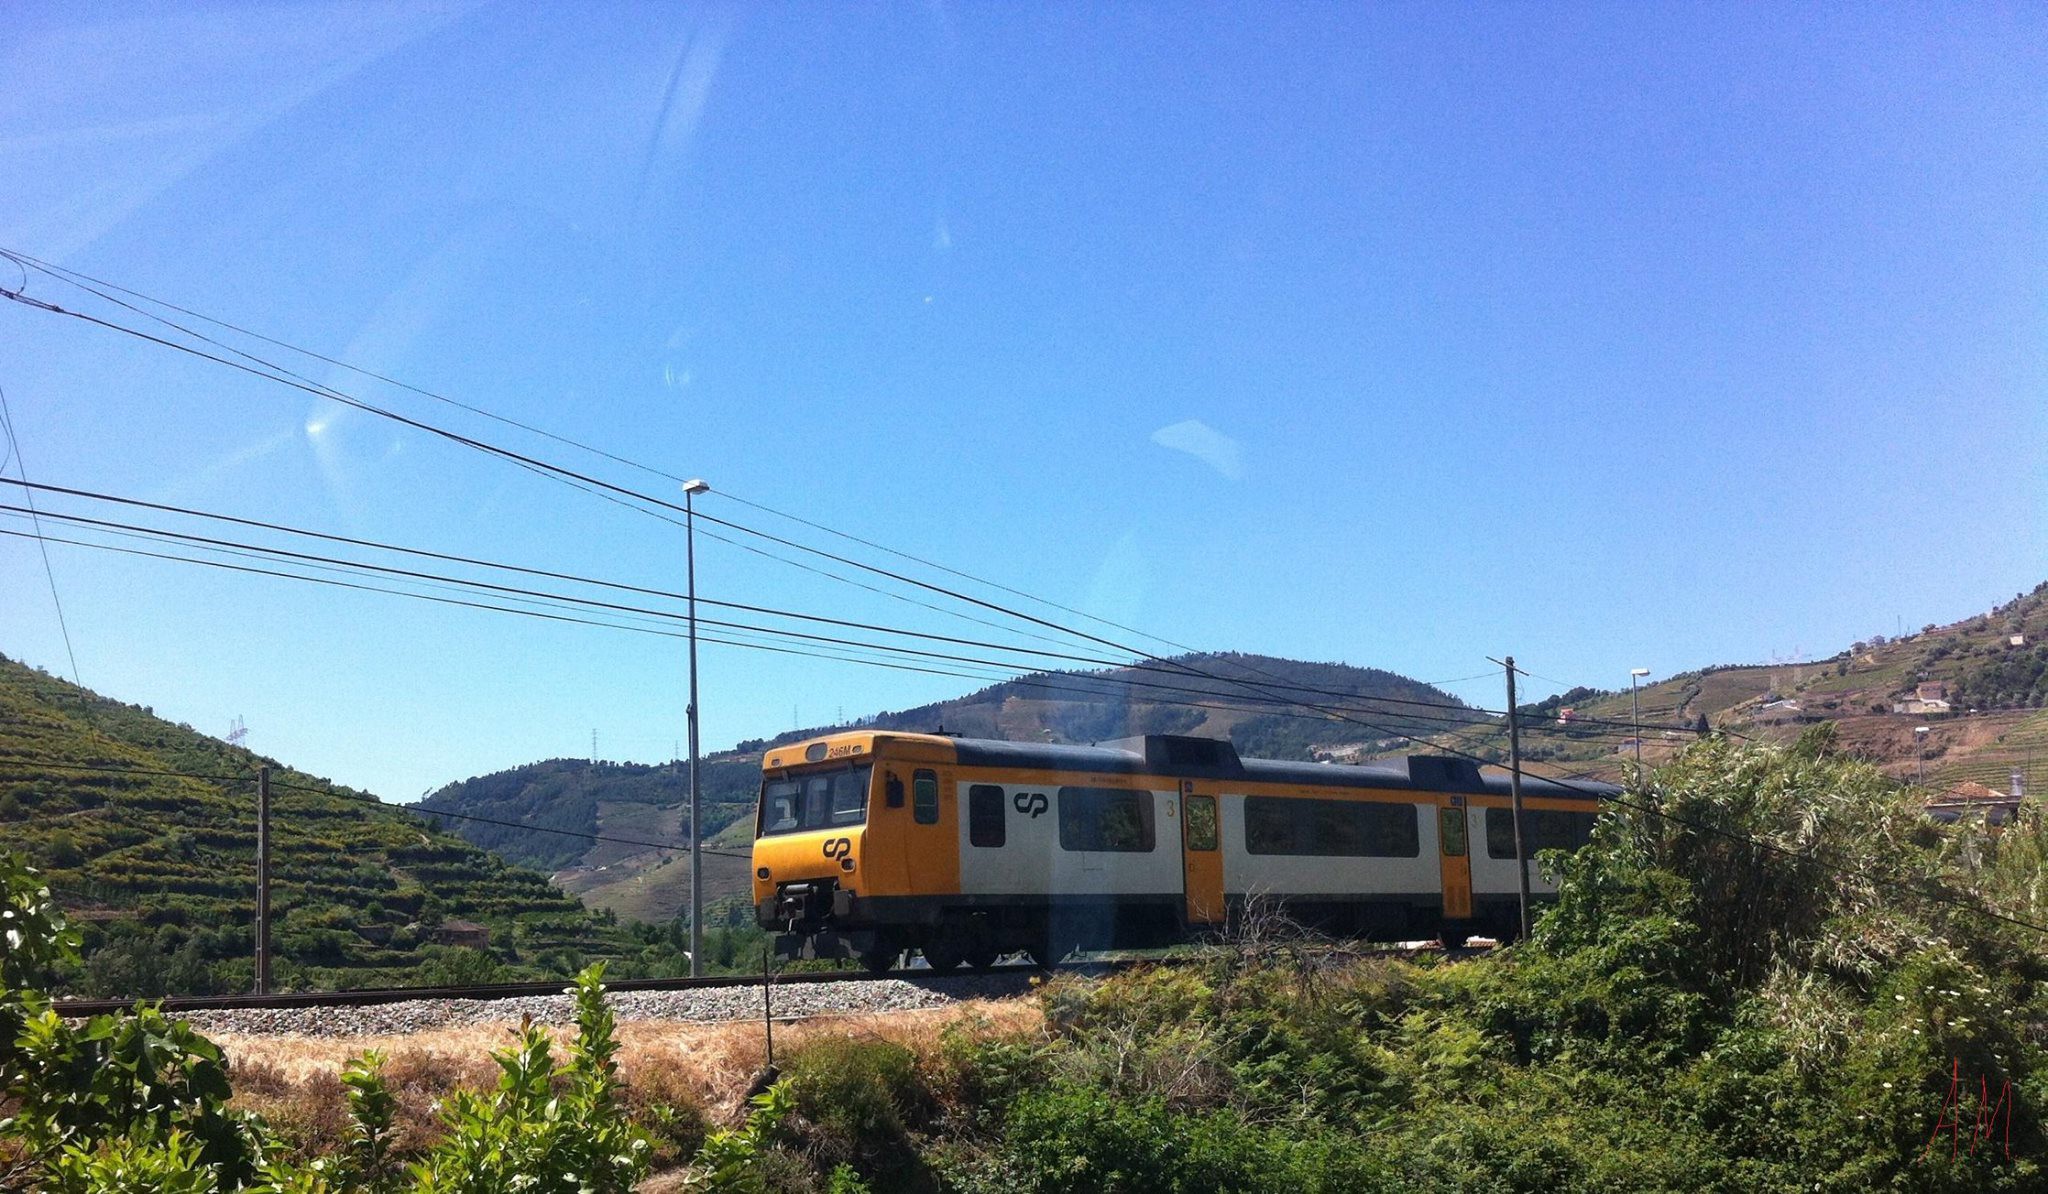 Avança projeto de eletrificação da linha do Douro até à Régua